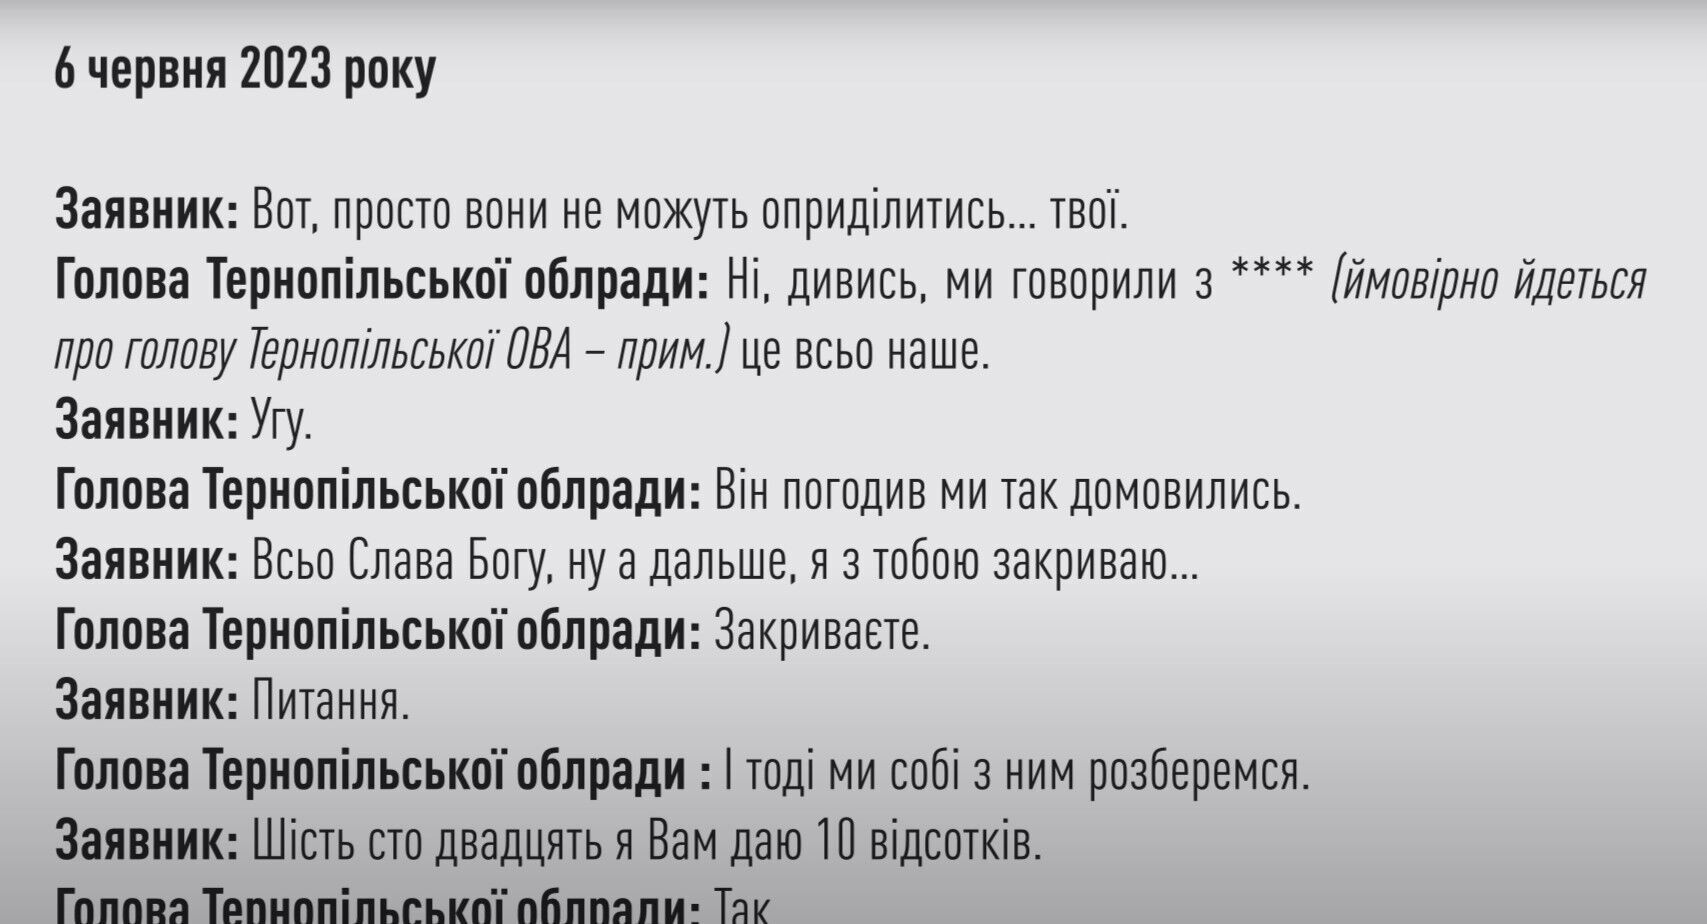 Фрагмент разговора - председатель Тернопольского облсовета уверяет, что вопрос заявителя ''согласован'' с главой Тернопольского ОВА